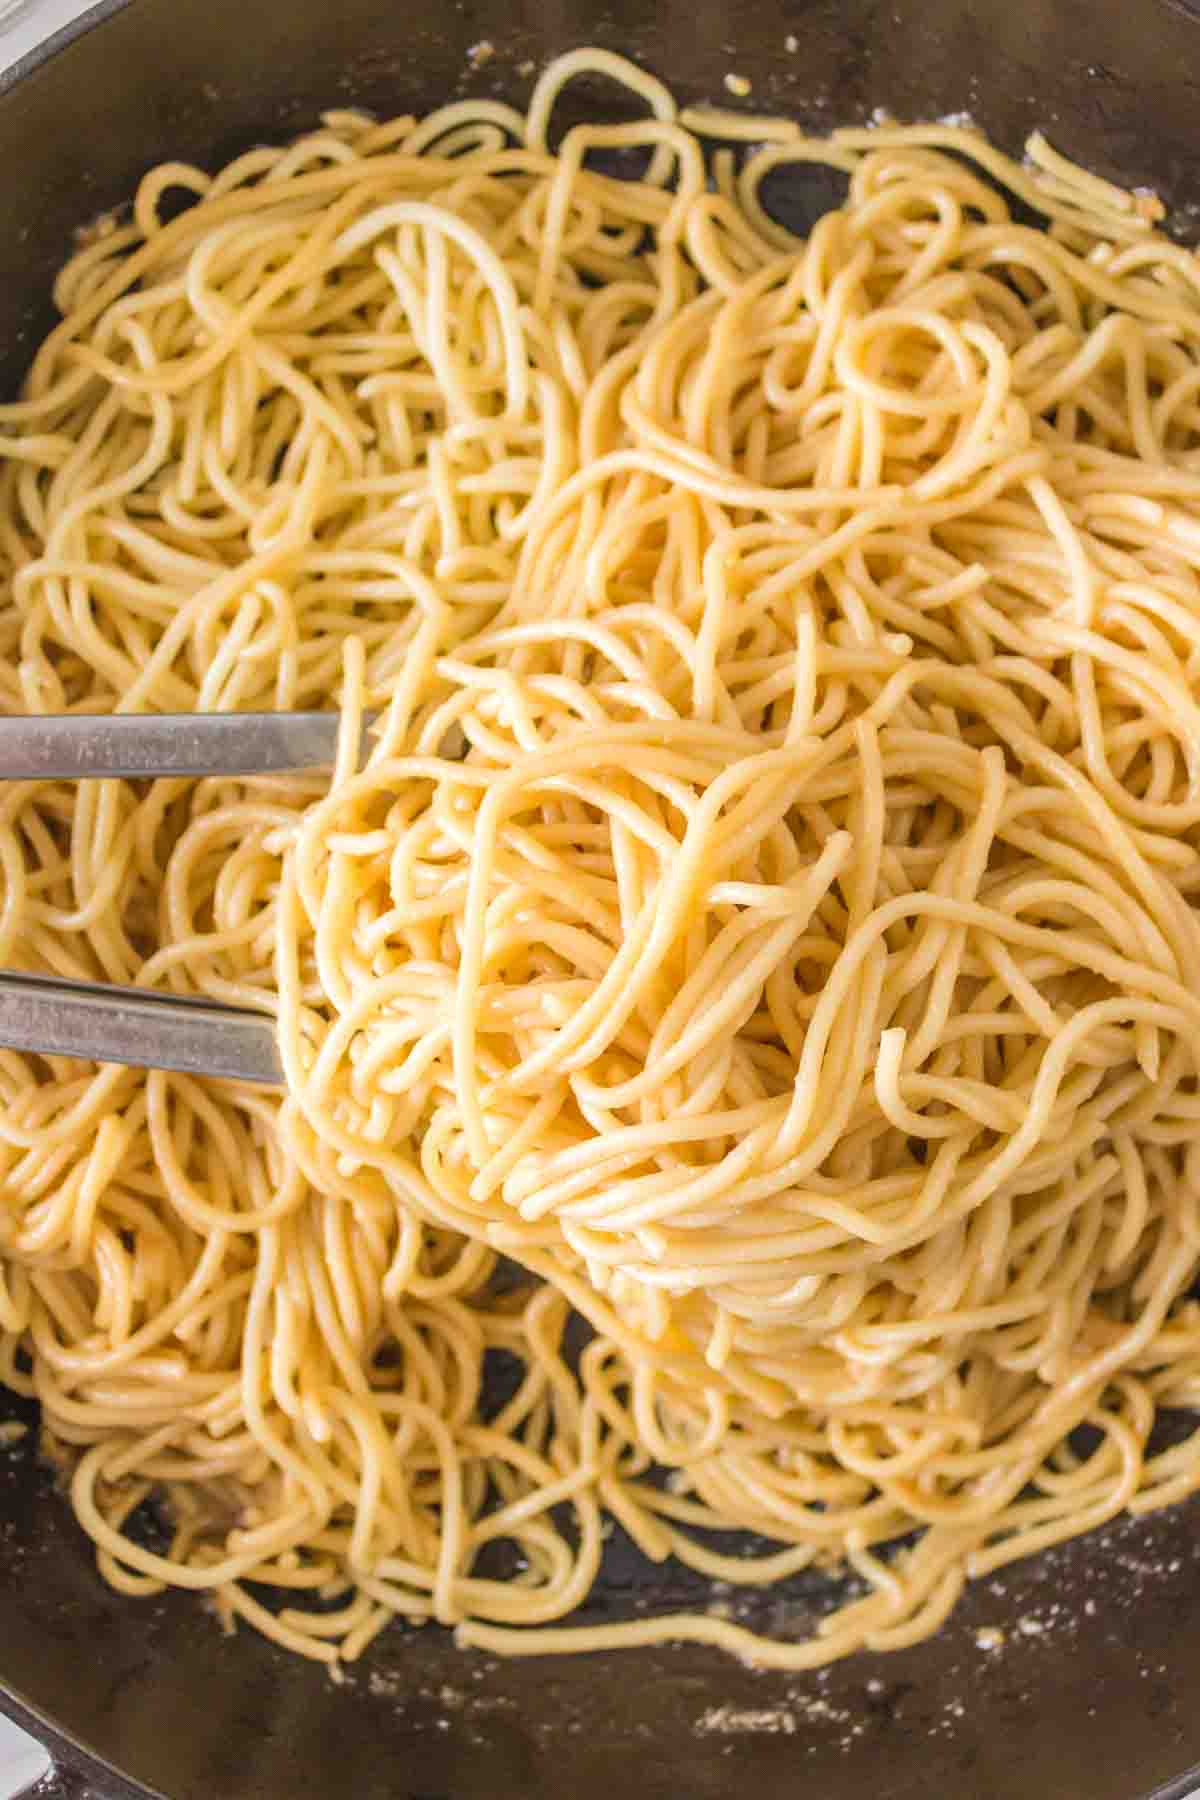 pan of garlic noodles and tongs